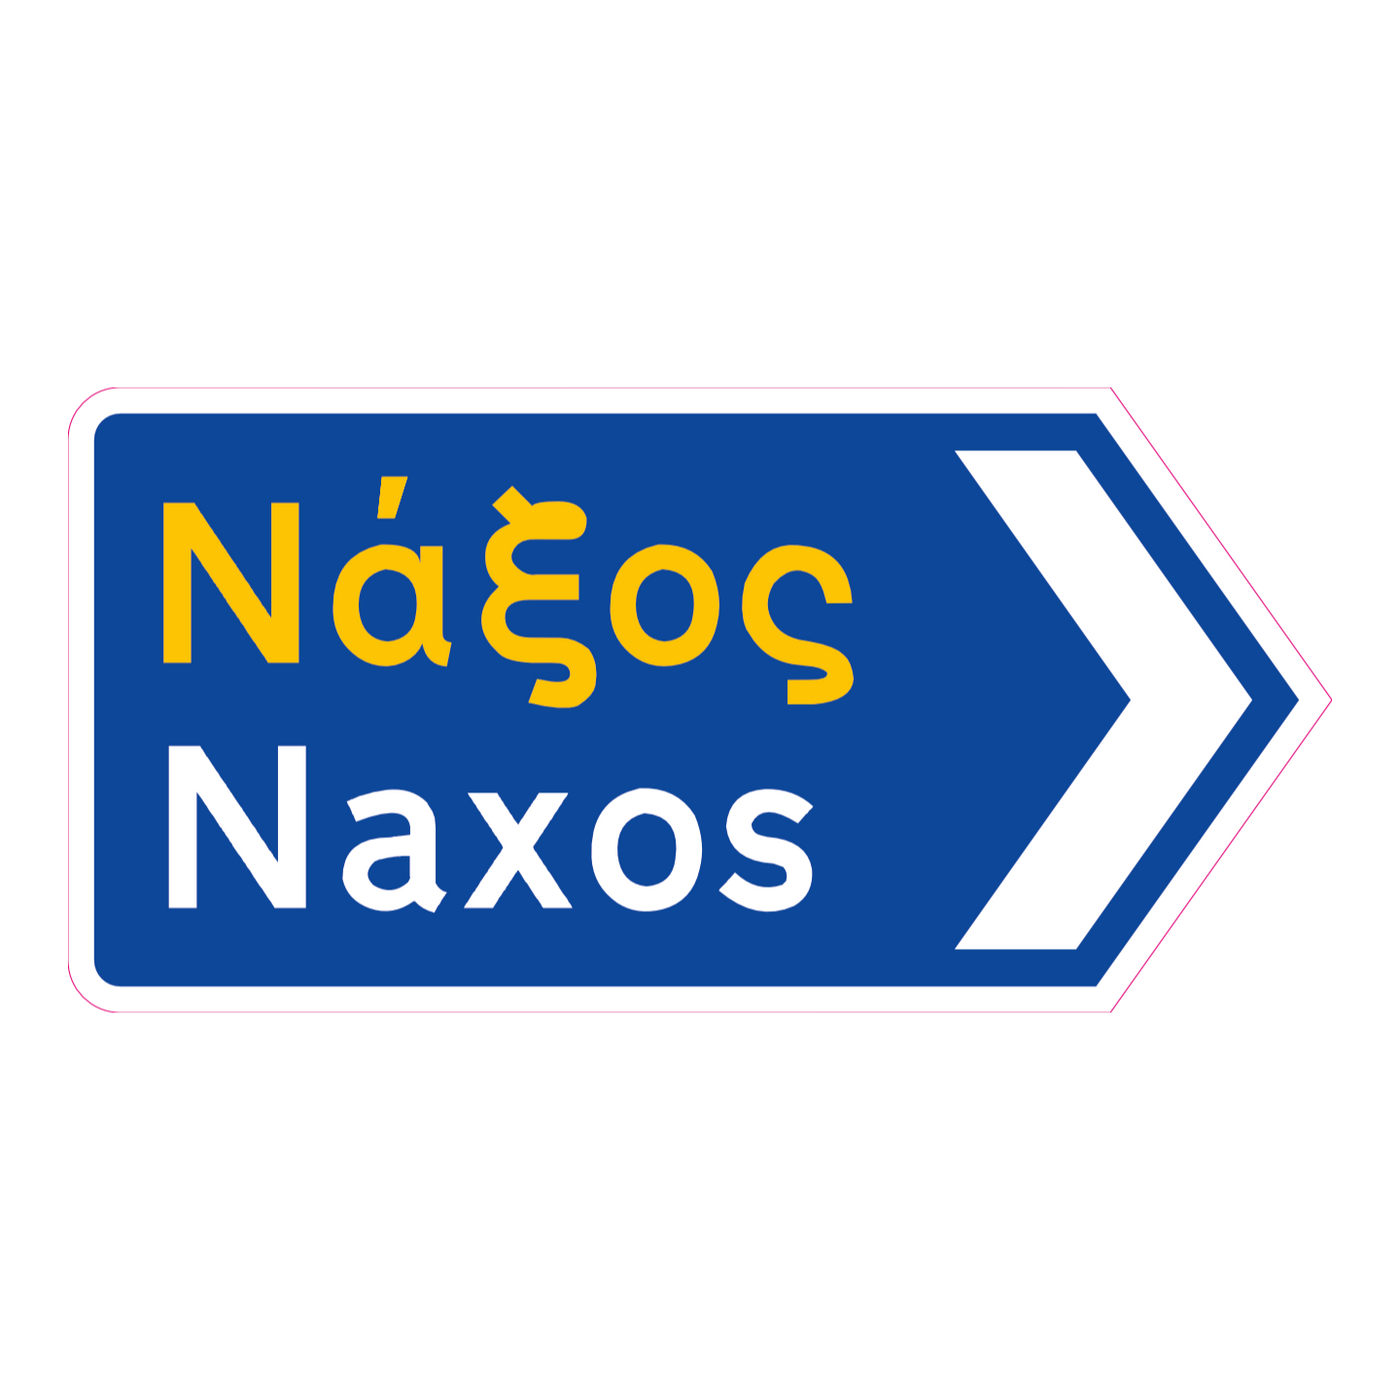 Naxos Greek road sign